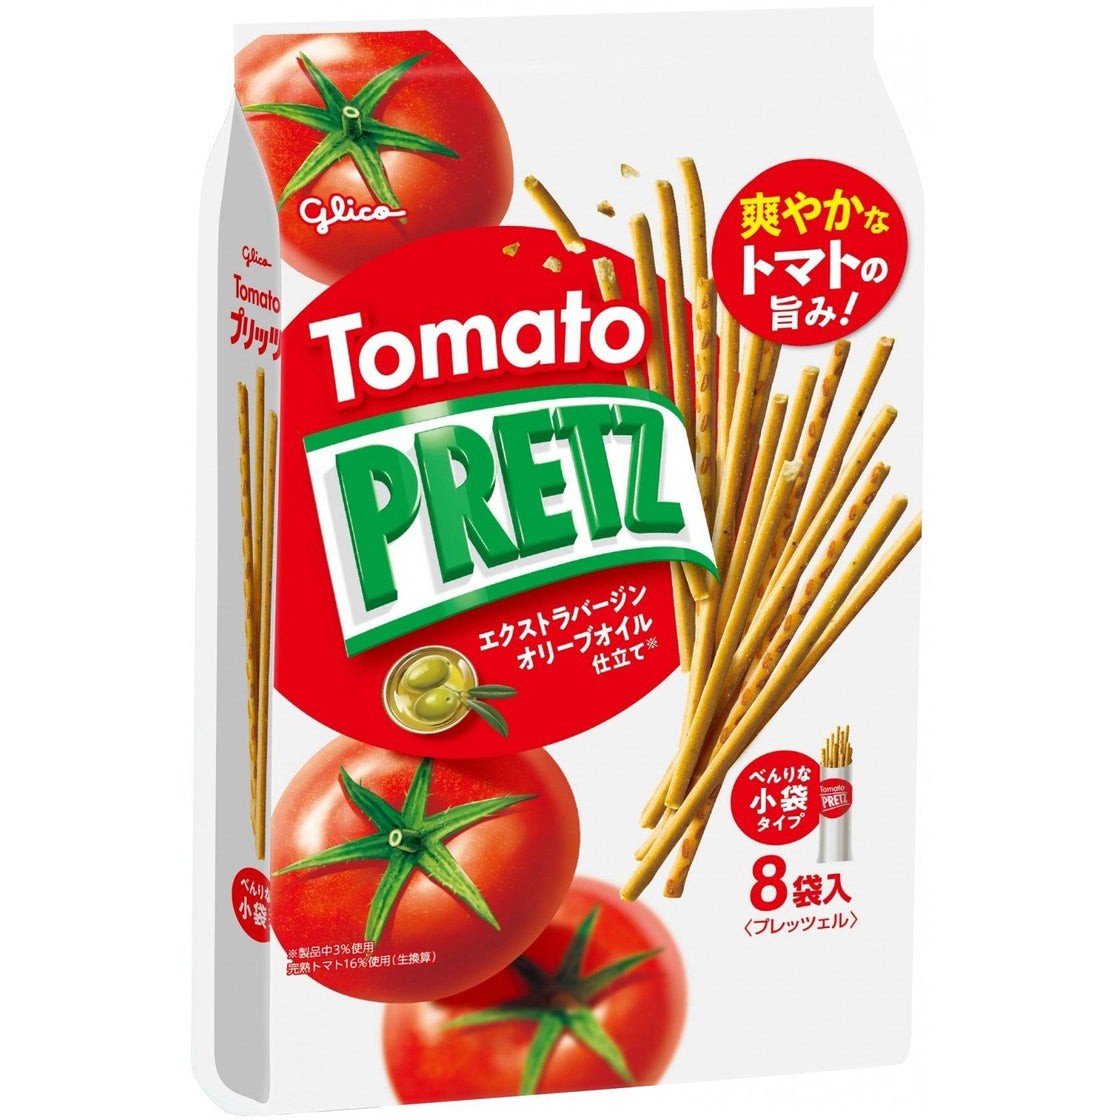 glico-pretz-tomato-flavor-pretzel-sticks-bag